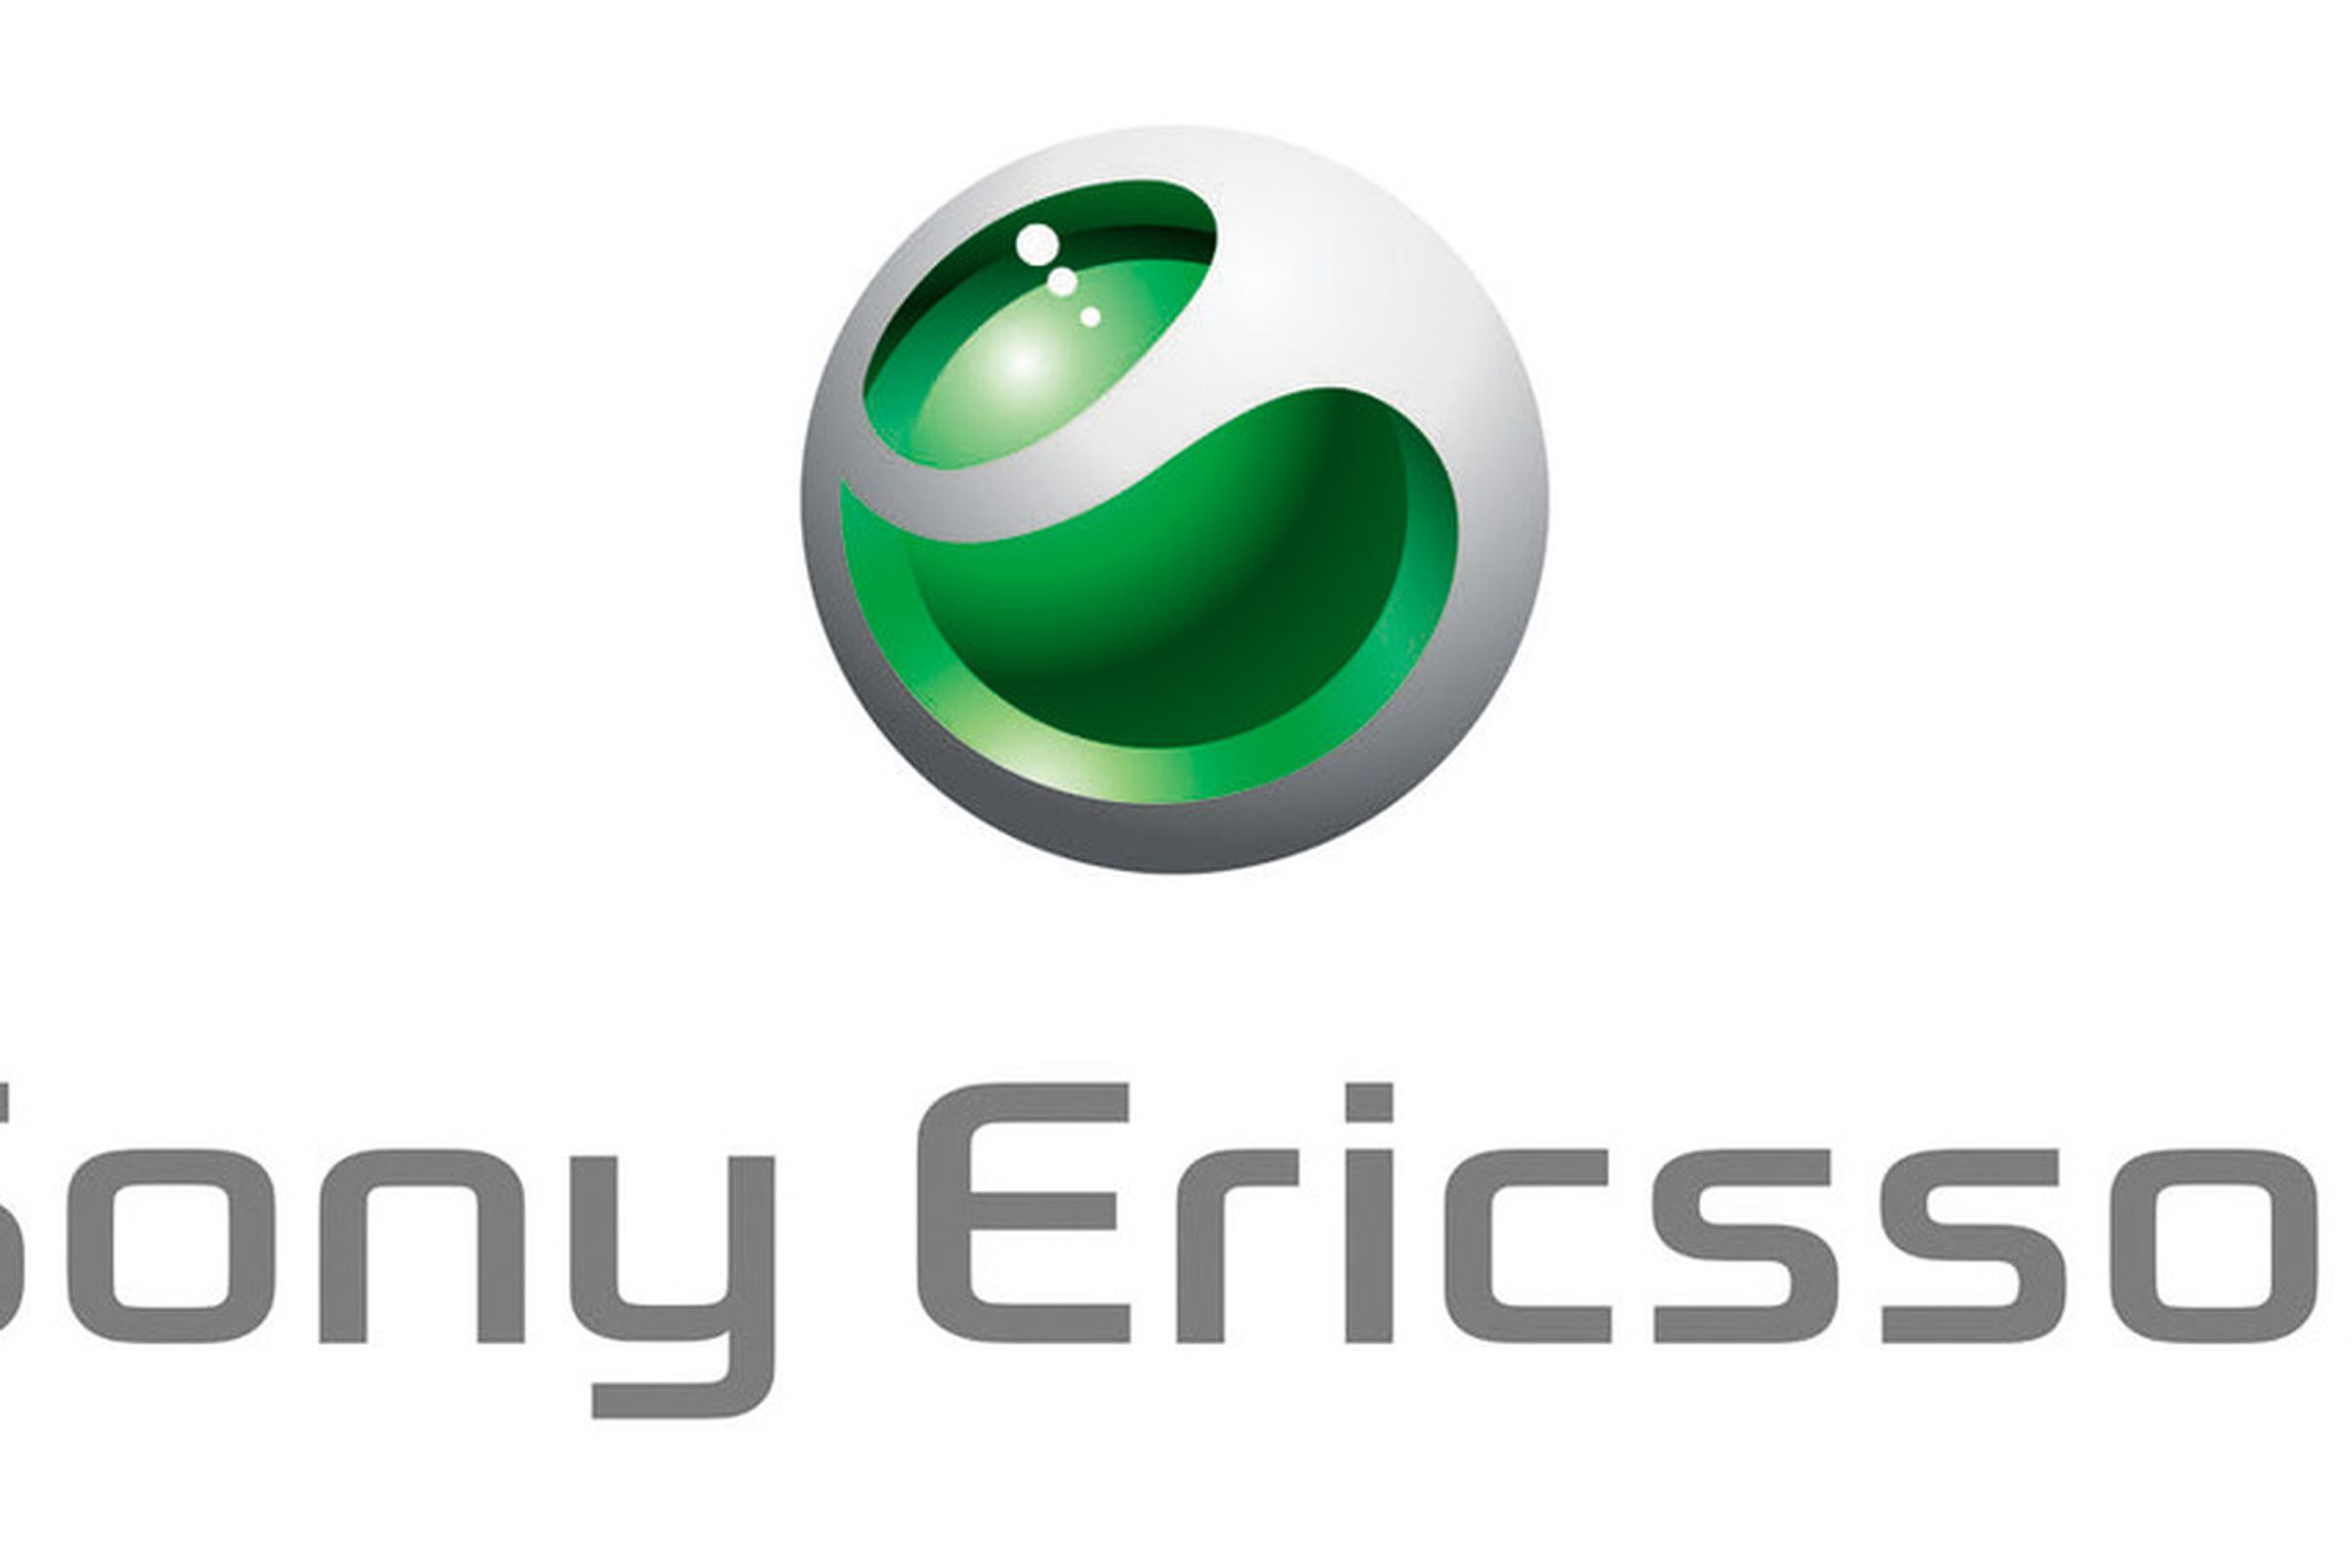 Sony Ericsson logo